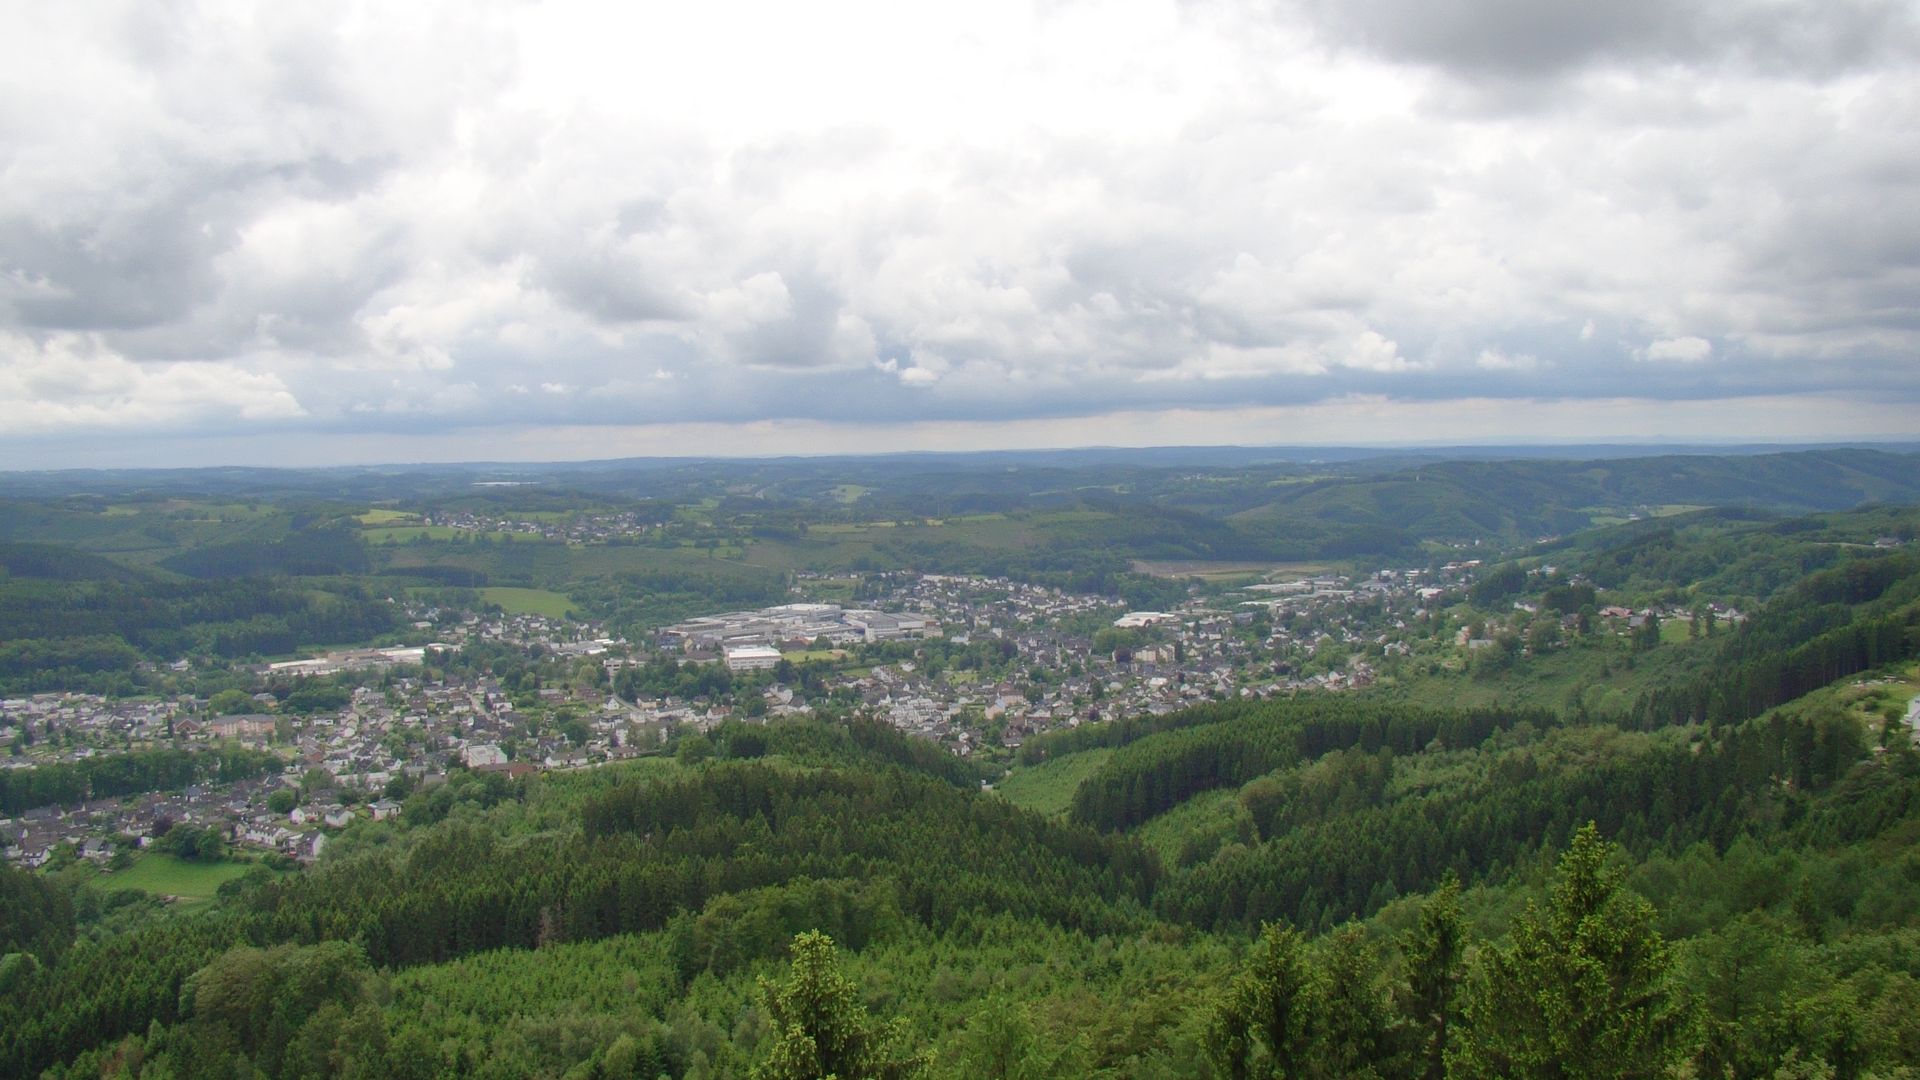 Aussicht vom Aussichtsturm in Bergneustadt über die grünen Hügel und Ortschaften des Bergischen Landes